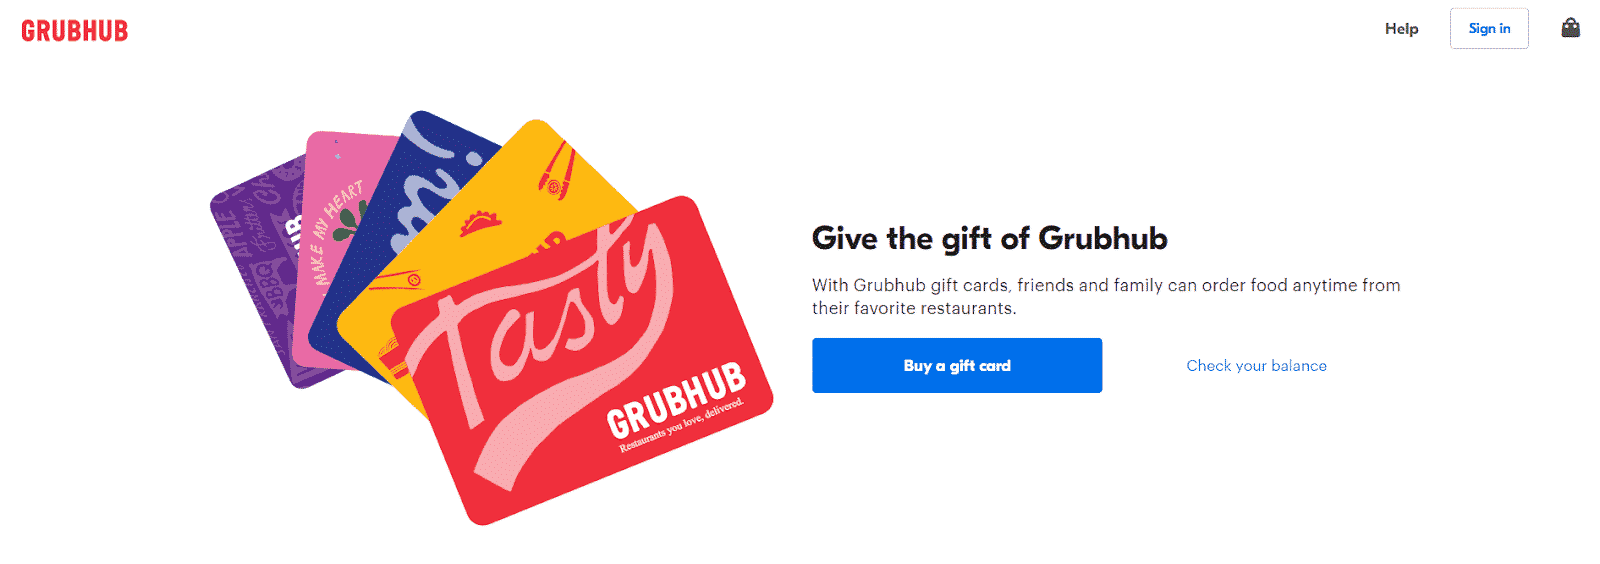 Grubhub gift card homepage